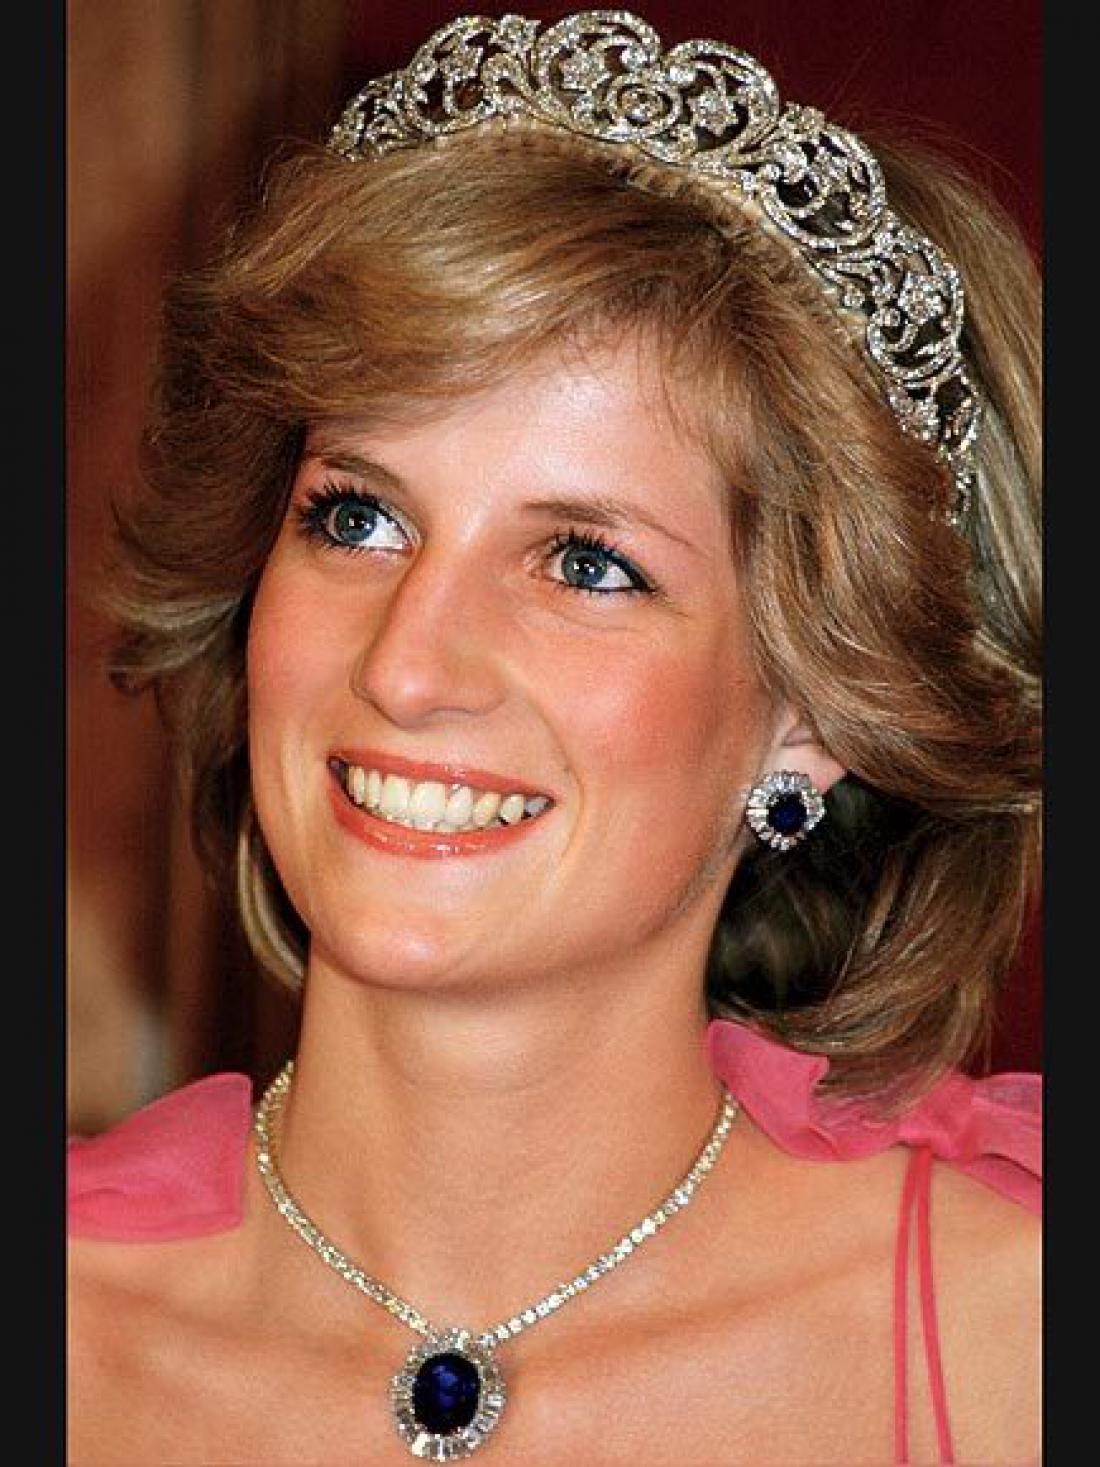 Princesa Diana je tiare pričela nositi pomaknjene na vrh glave kot obroč za lase. Foto: AFP